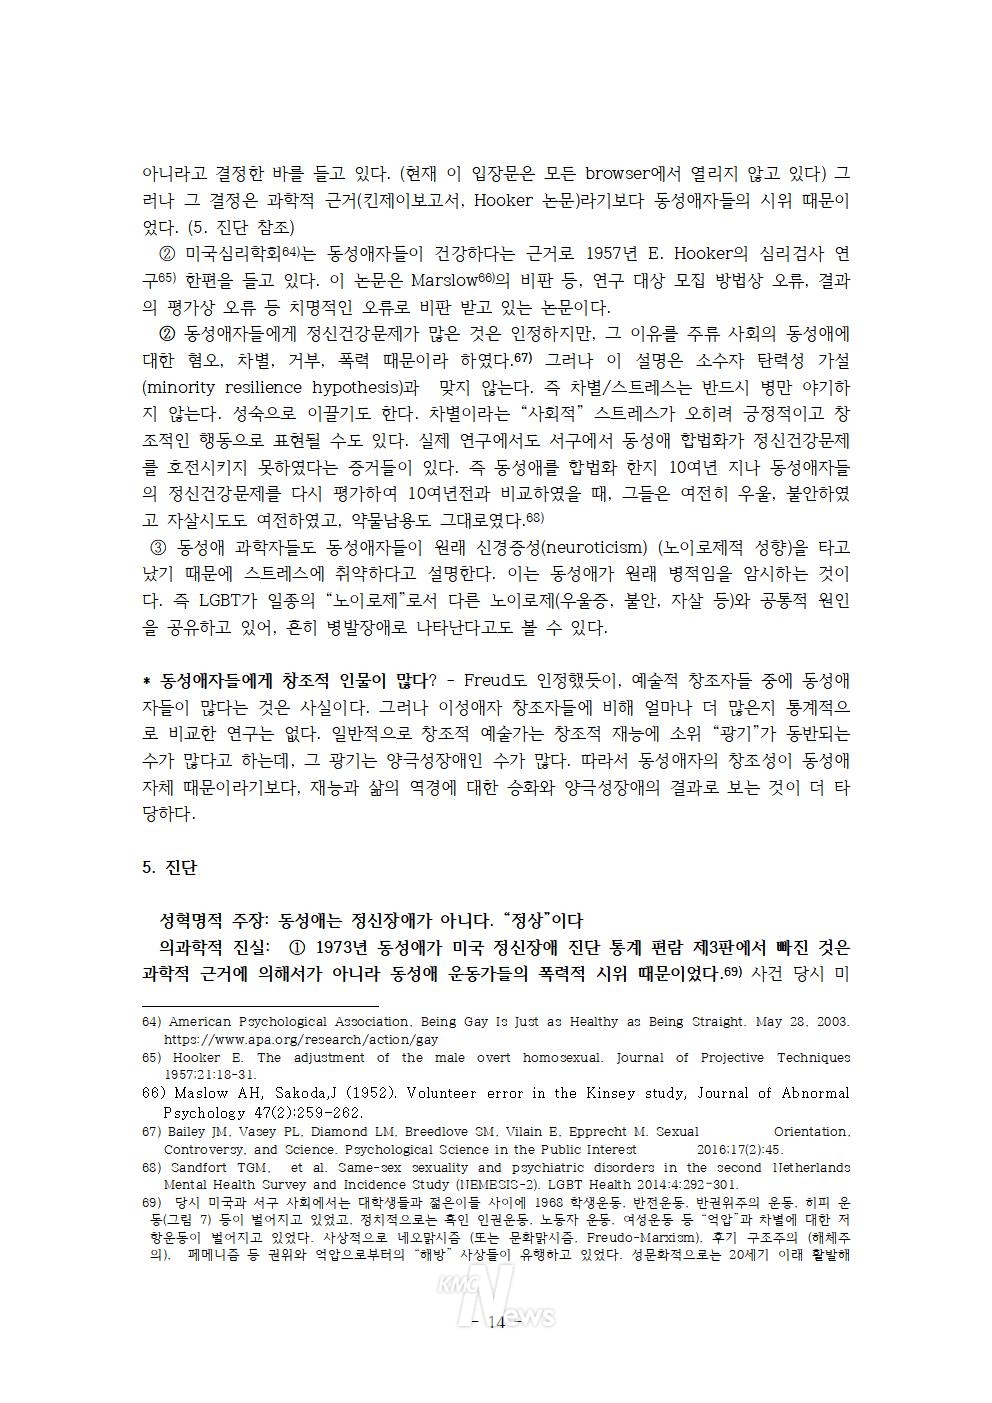 민성길 원장 강연 전문 / LGBT+ 의학